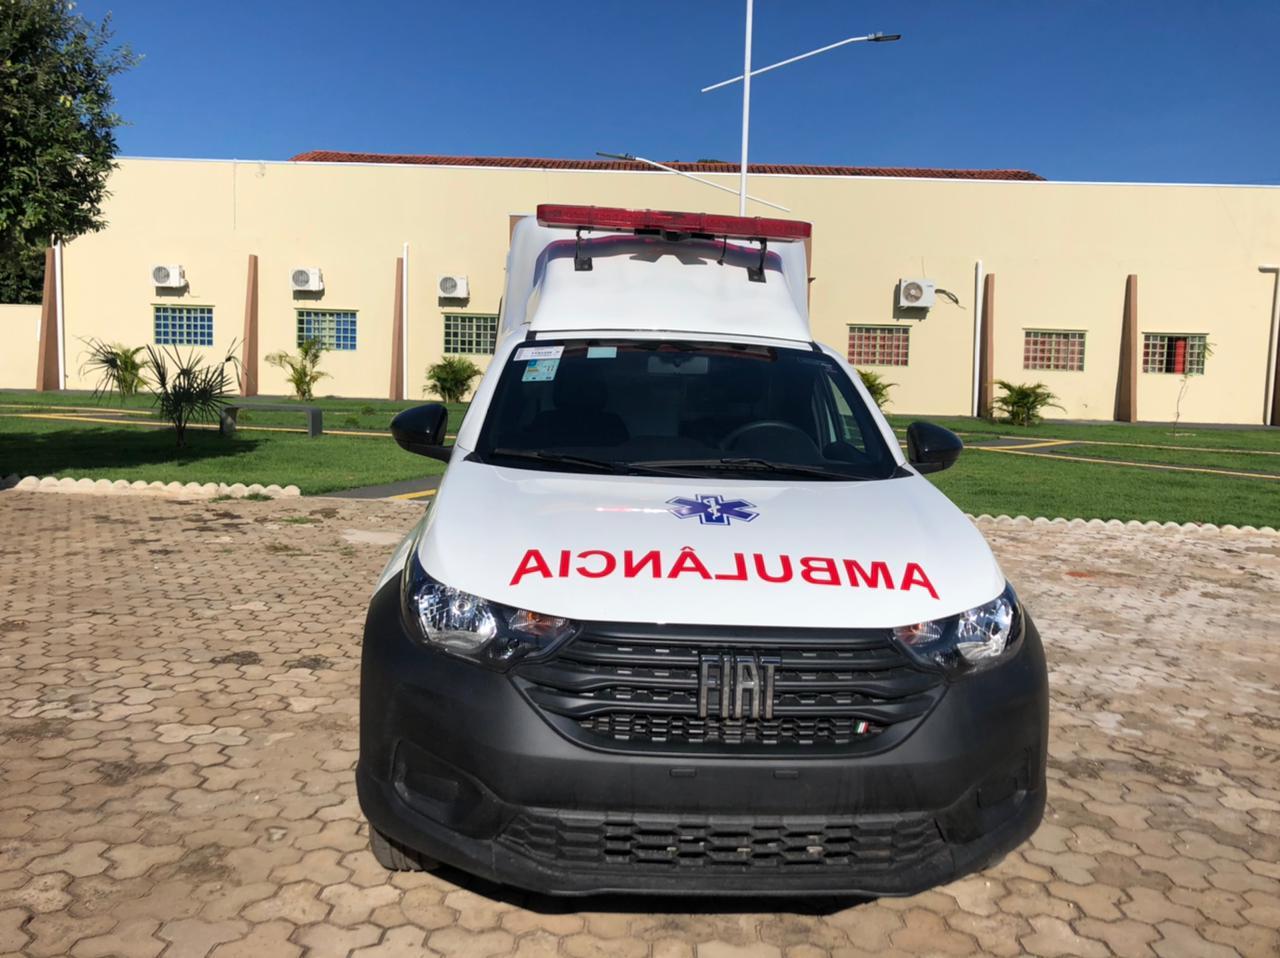 Prefeitura de Talismã realiza a aquisição de mais uma ambulância 